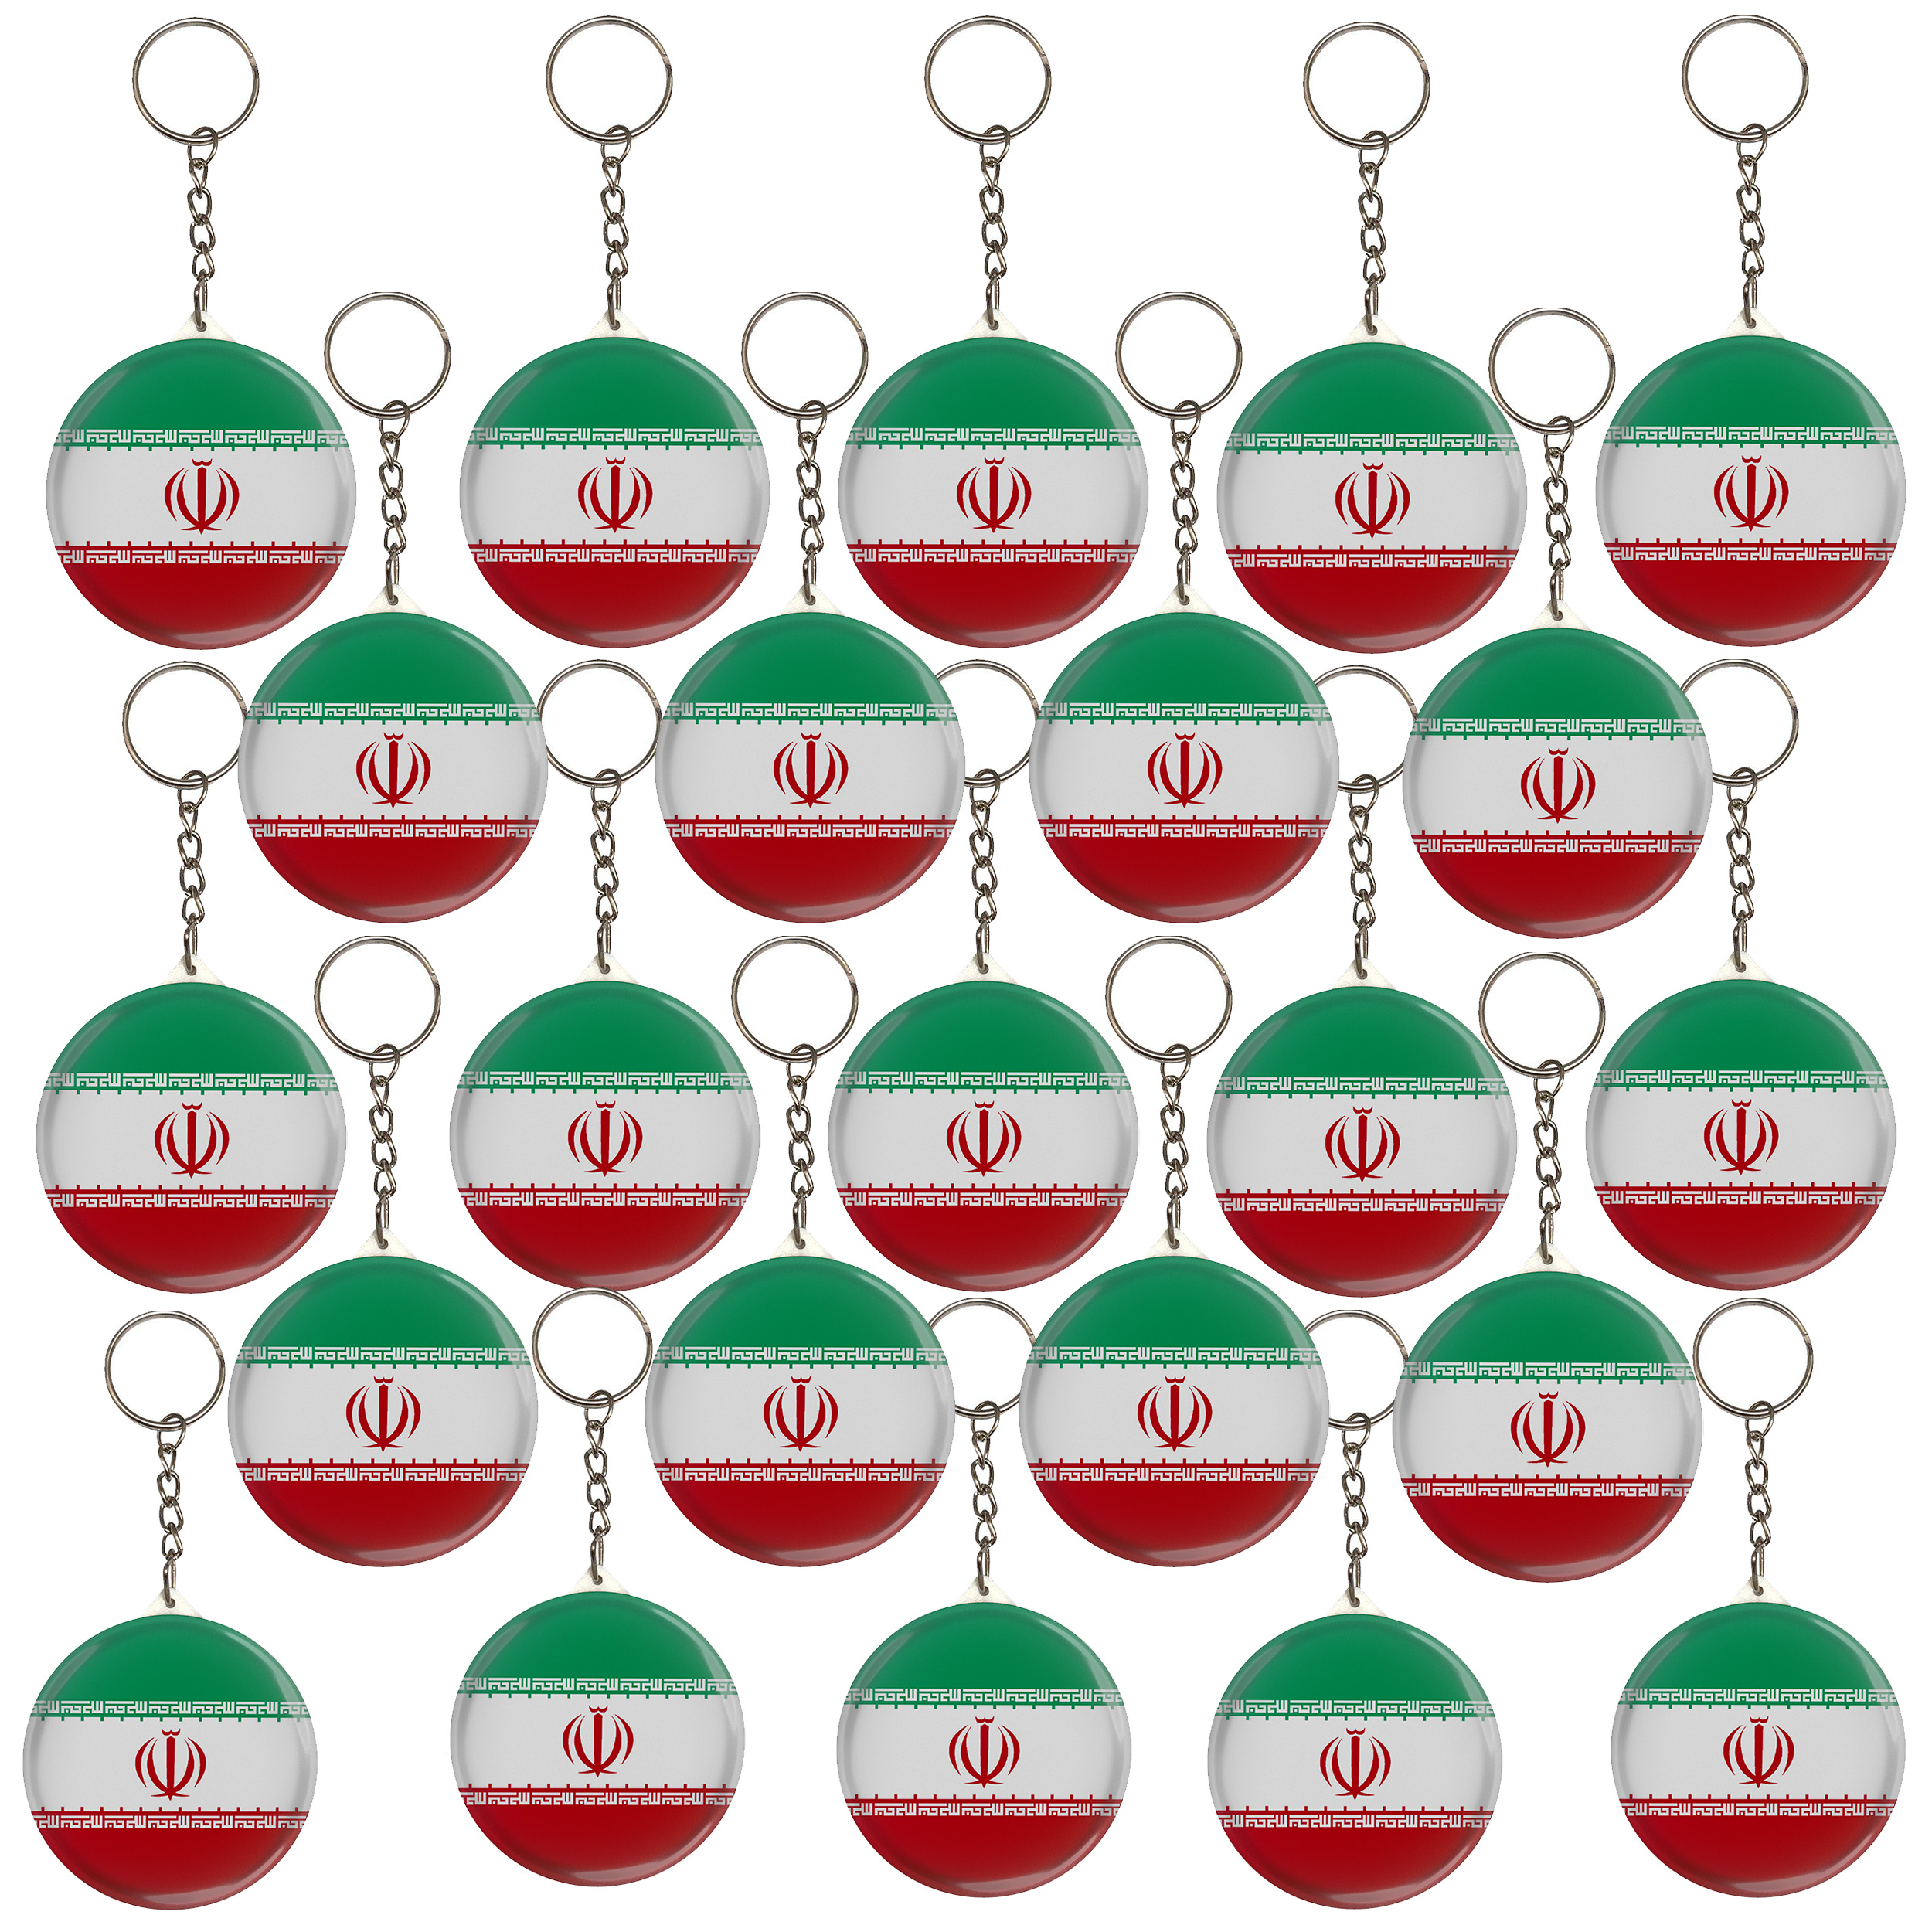 جاکلیدی مدل پرچم کشور جمهوری اسلامی ایران کد S5-23 مجموعه 23 عددی